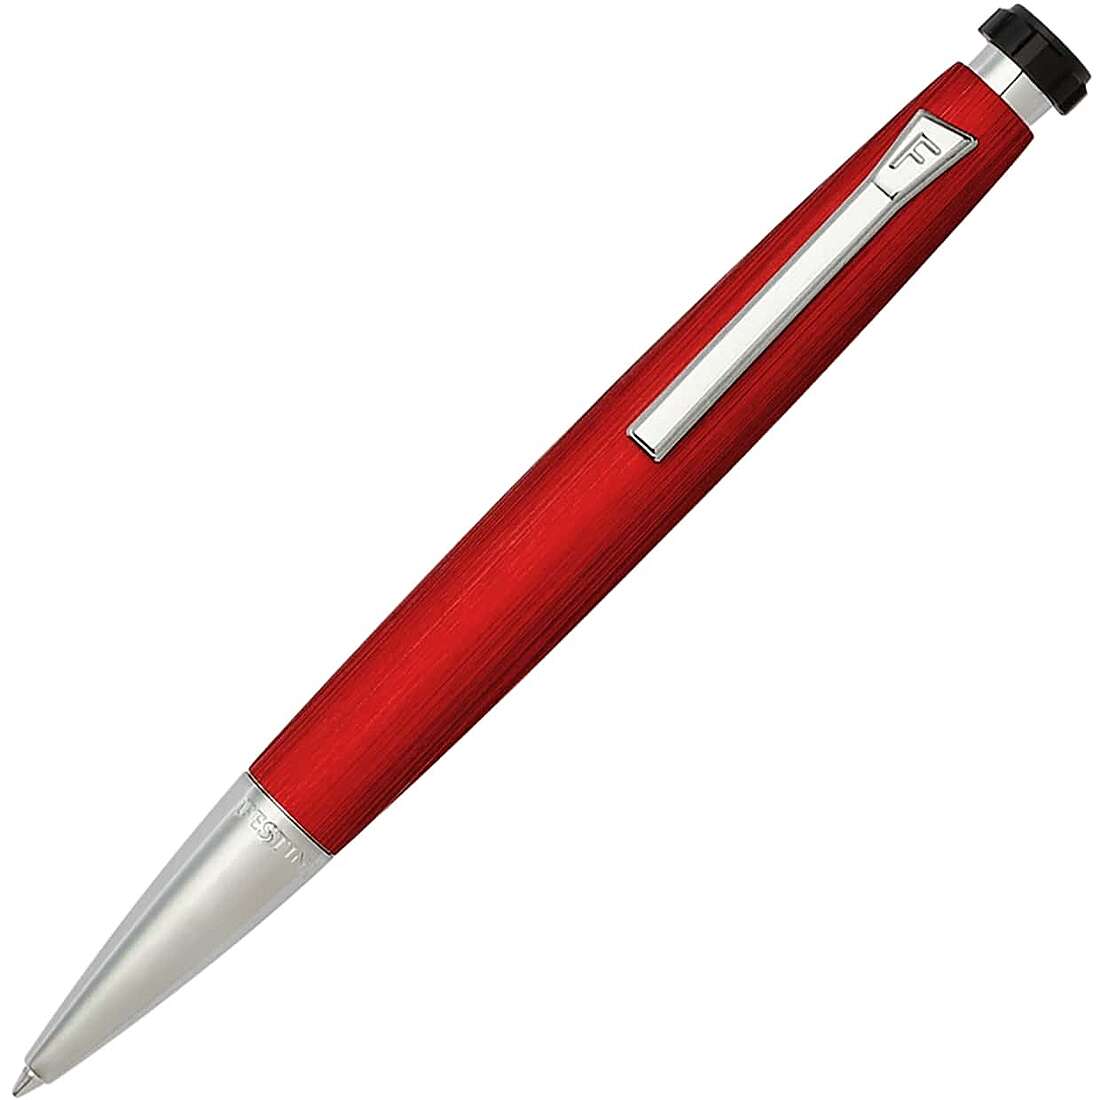 Customized pen with ballpoint by Festina Chrono Bike FWS4104/P